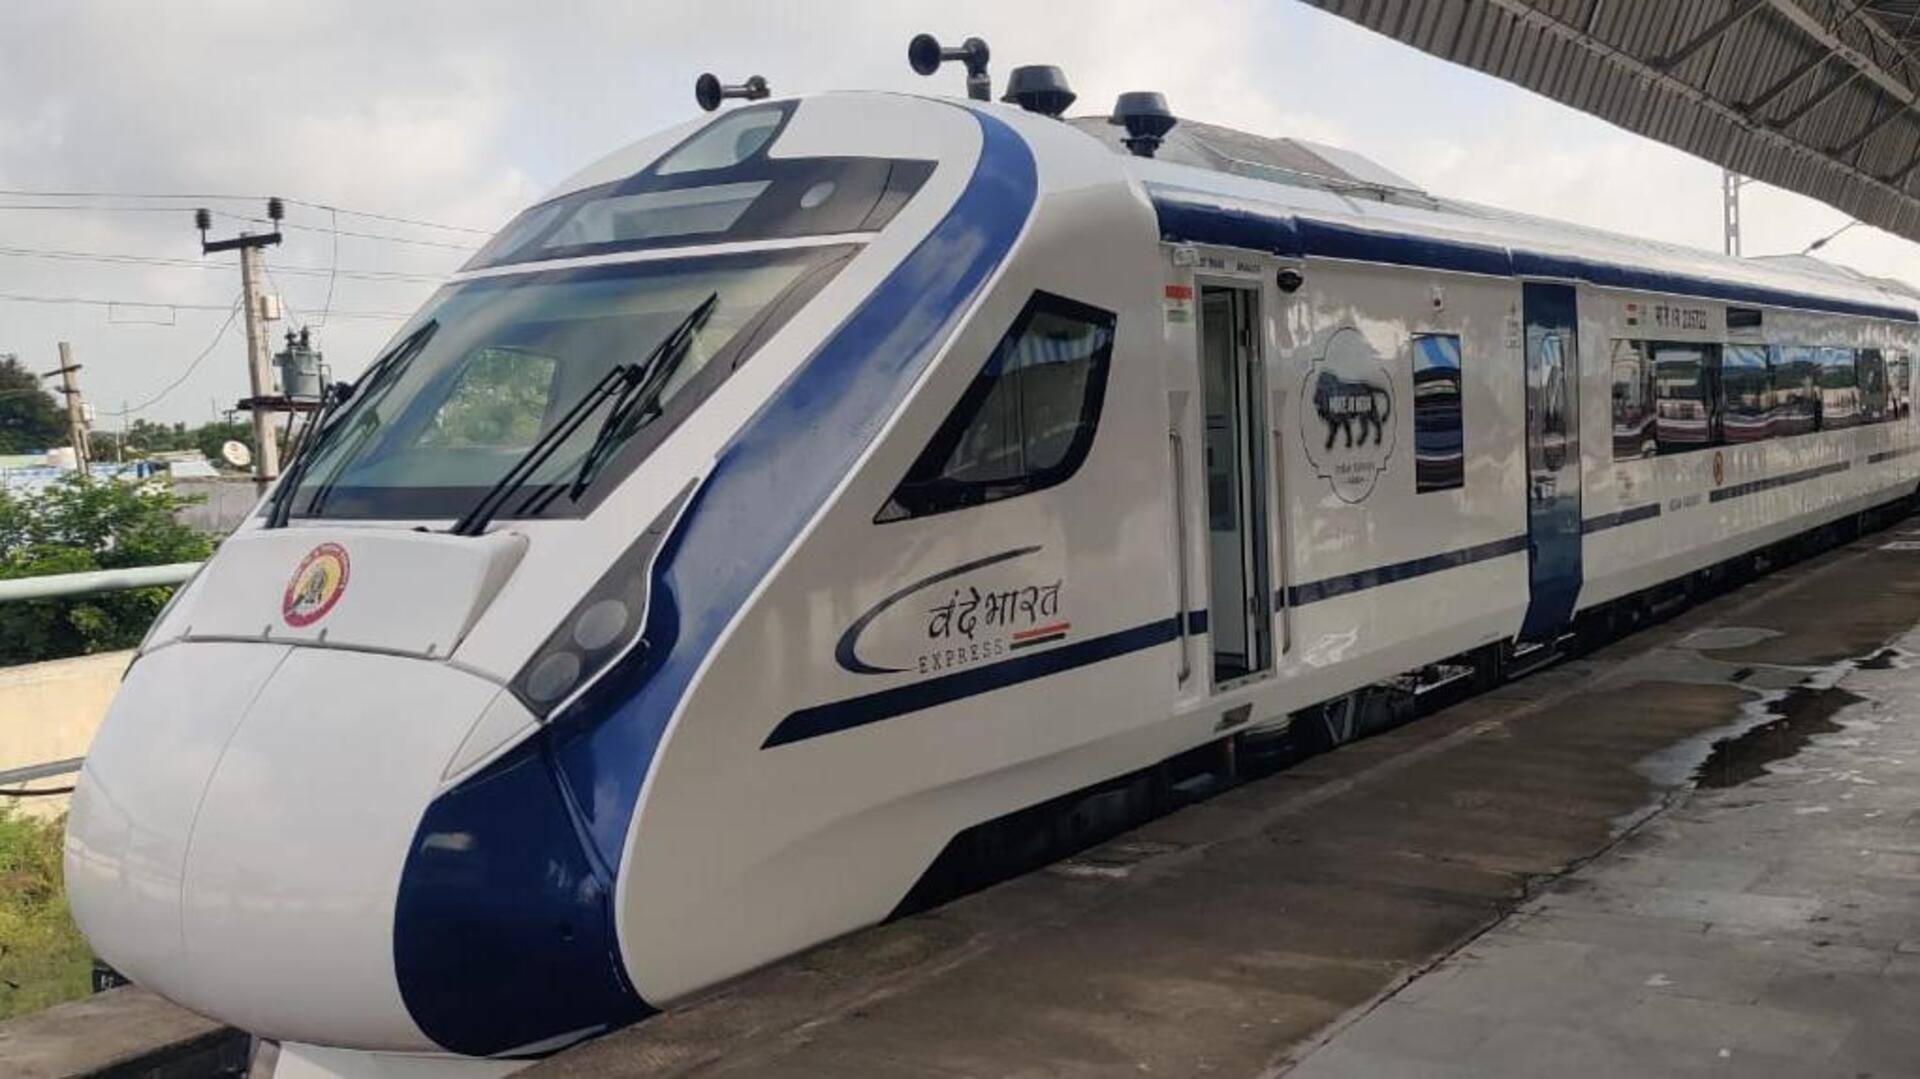 अगले साल 500 वंदे भारत एक्सप्रेस शुरू कर सकता है रेलवे, ट्रेनों में होंगे विशेष इंतजाम